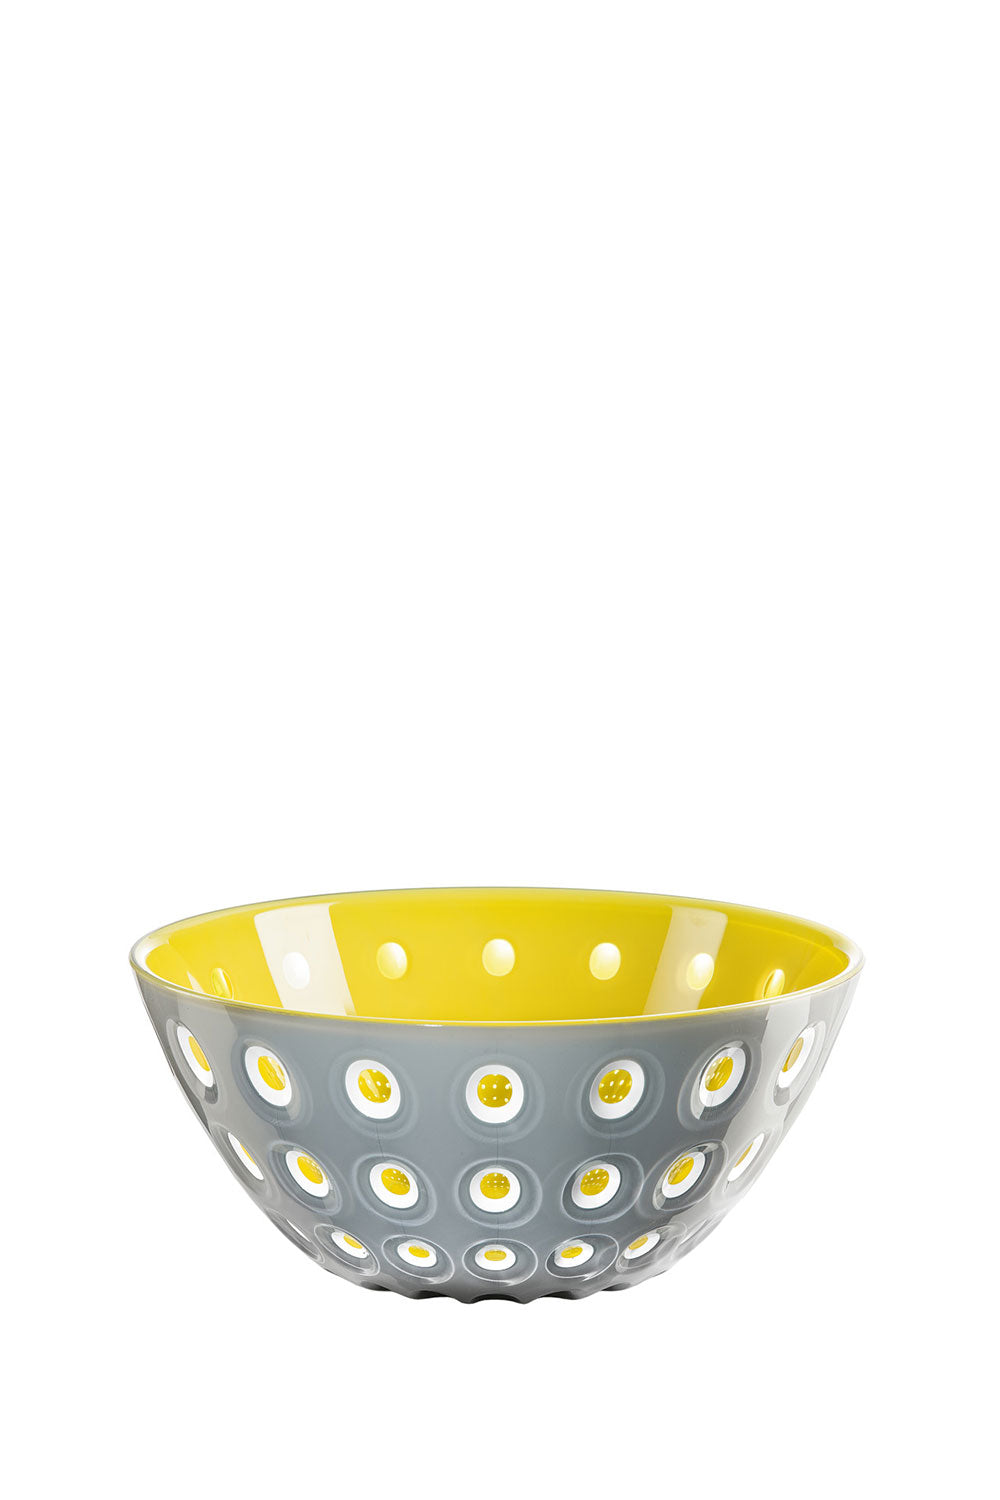 Murrine Grey & Yellow Bowl, 20 cm